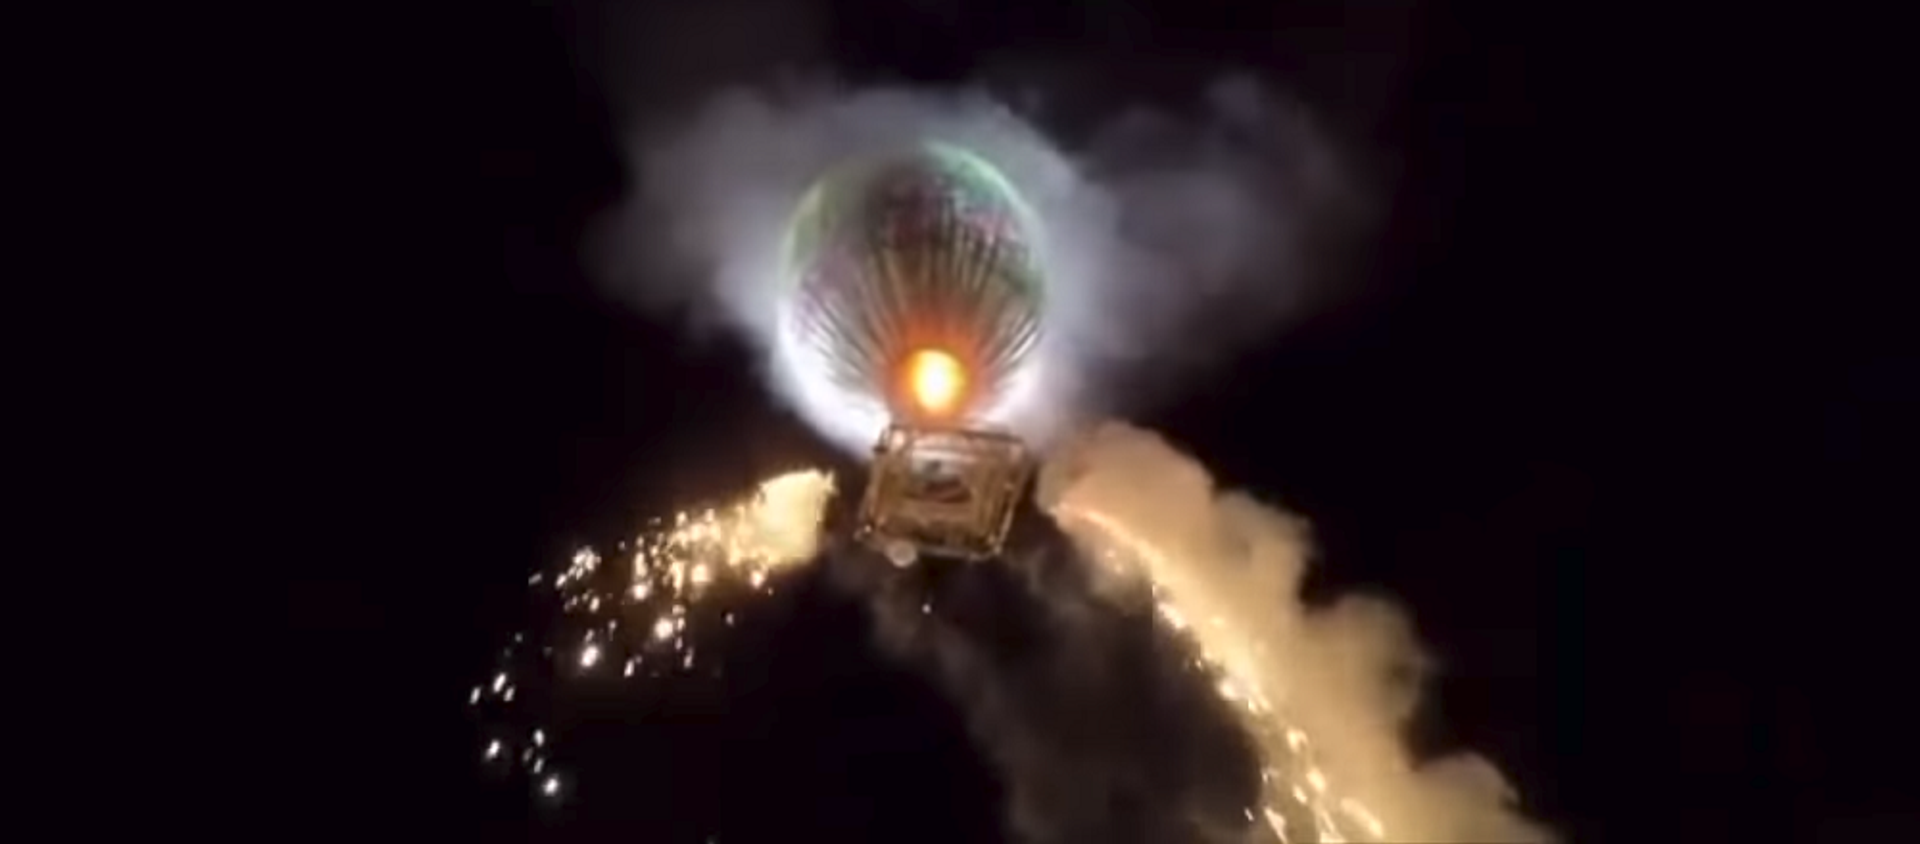 В Мьянме воздушный шар с фейерверками упал на гостей фестиваля и взорвался – видео - Sputnik Грузия, 1920, 20.11.2018